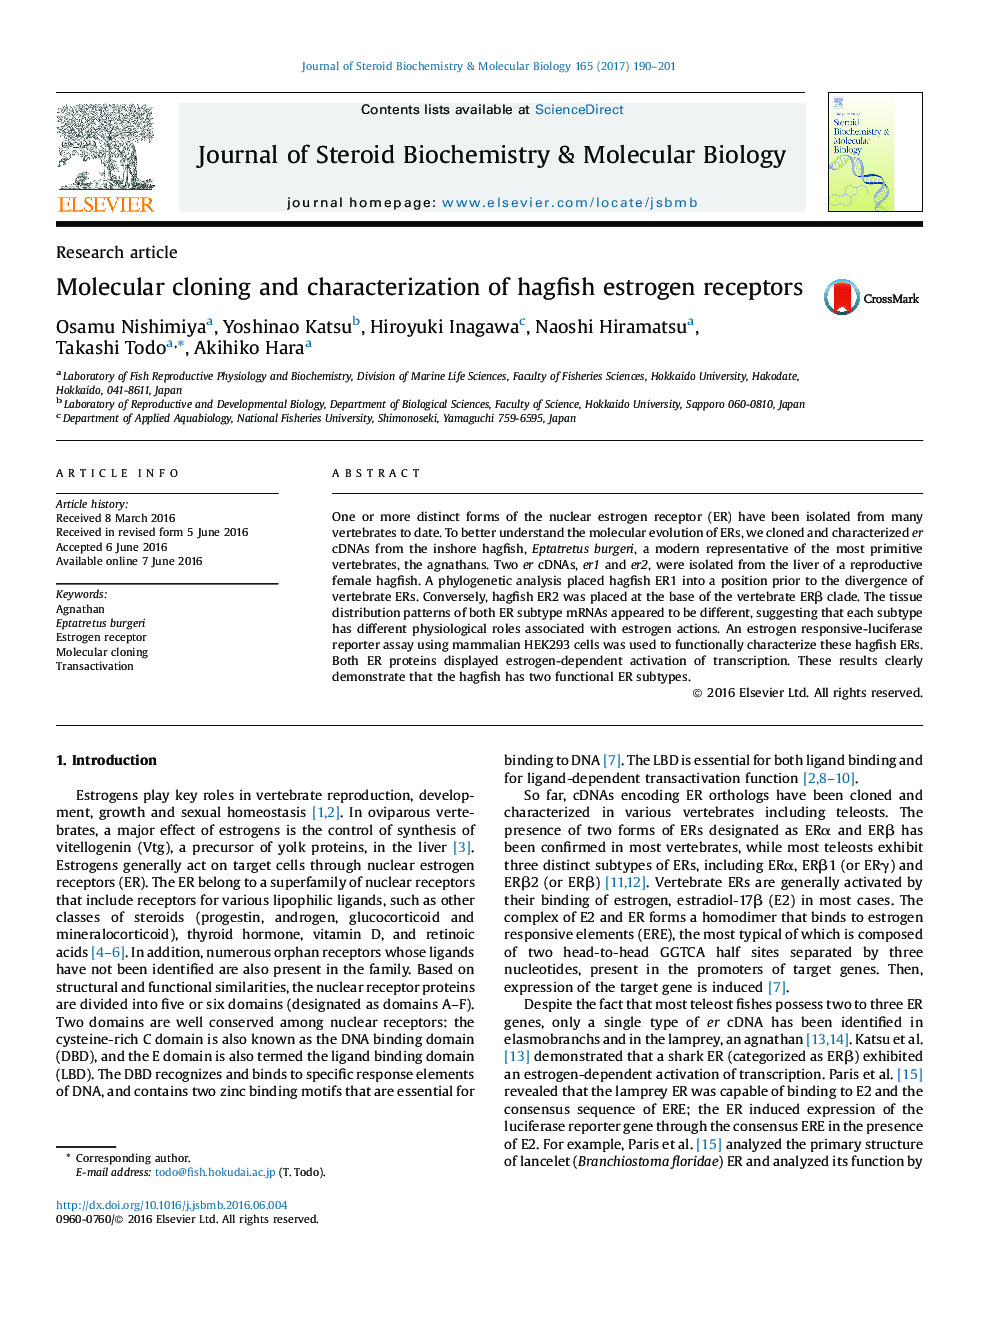 Research articleMolecular cloning and characterization of hagfish estrogen receptors